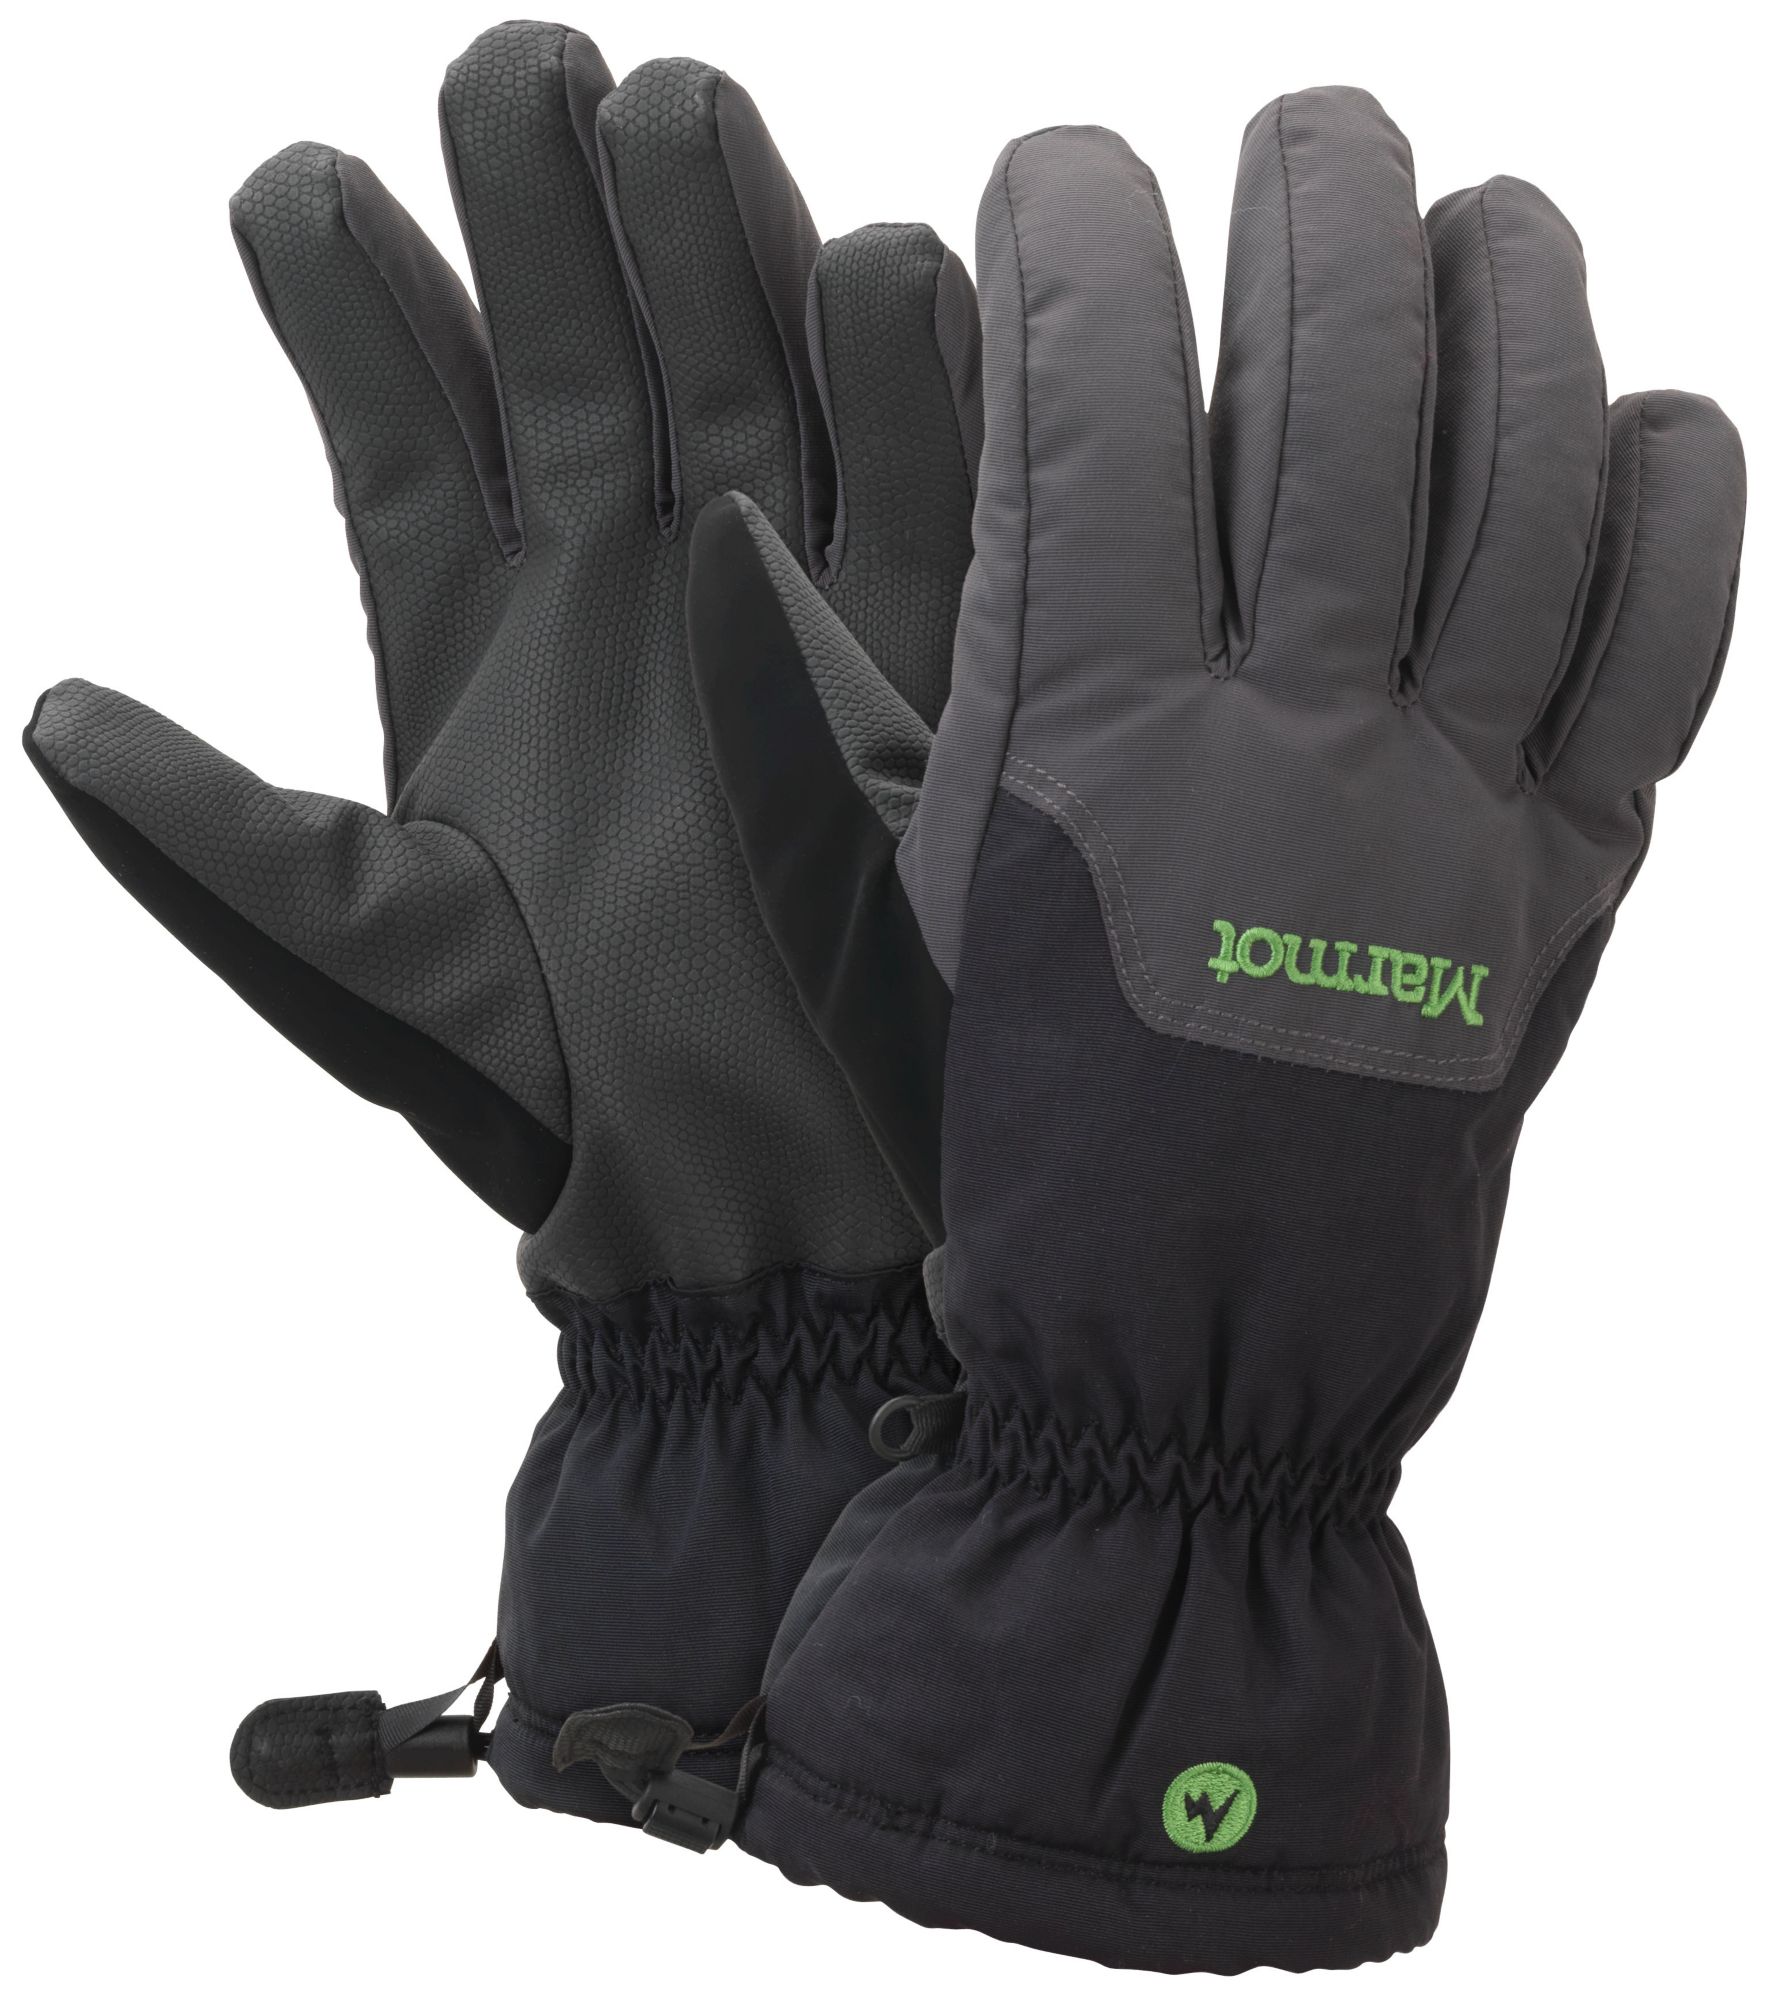 budget ski gloves